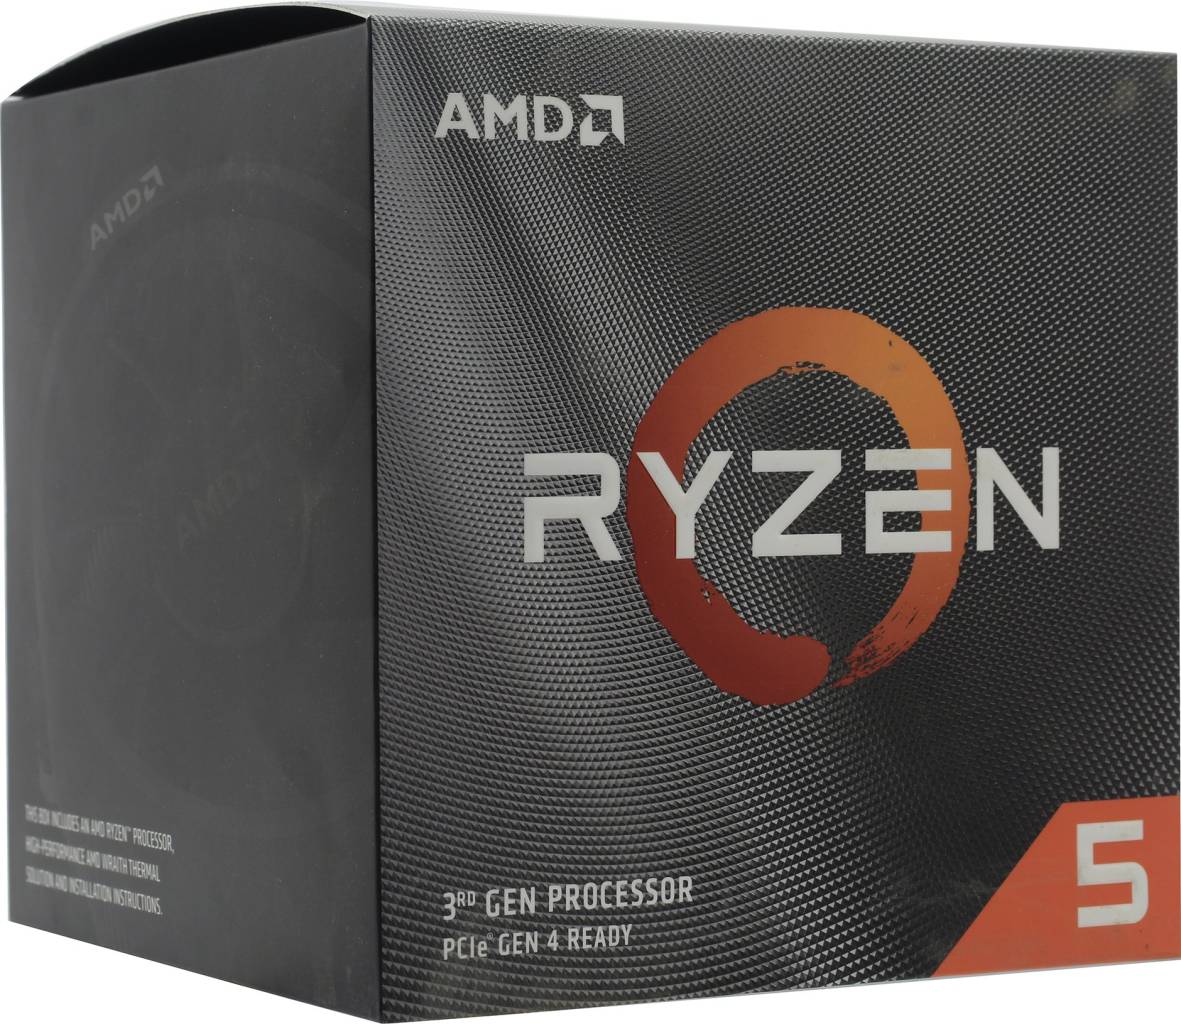   AMD Ryzen 5 3600XT BOX (100-100000281) 3.8 GHz/6core/3+32Mb/95W Socket AM4